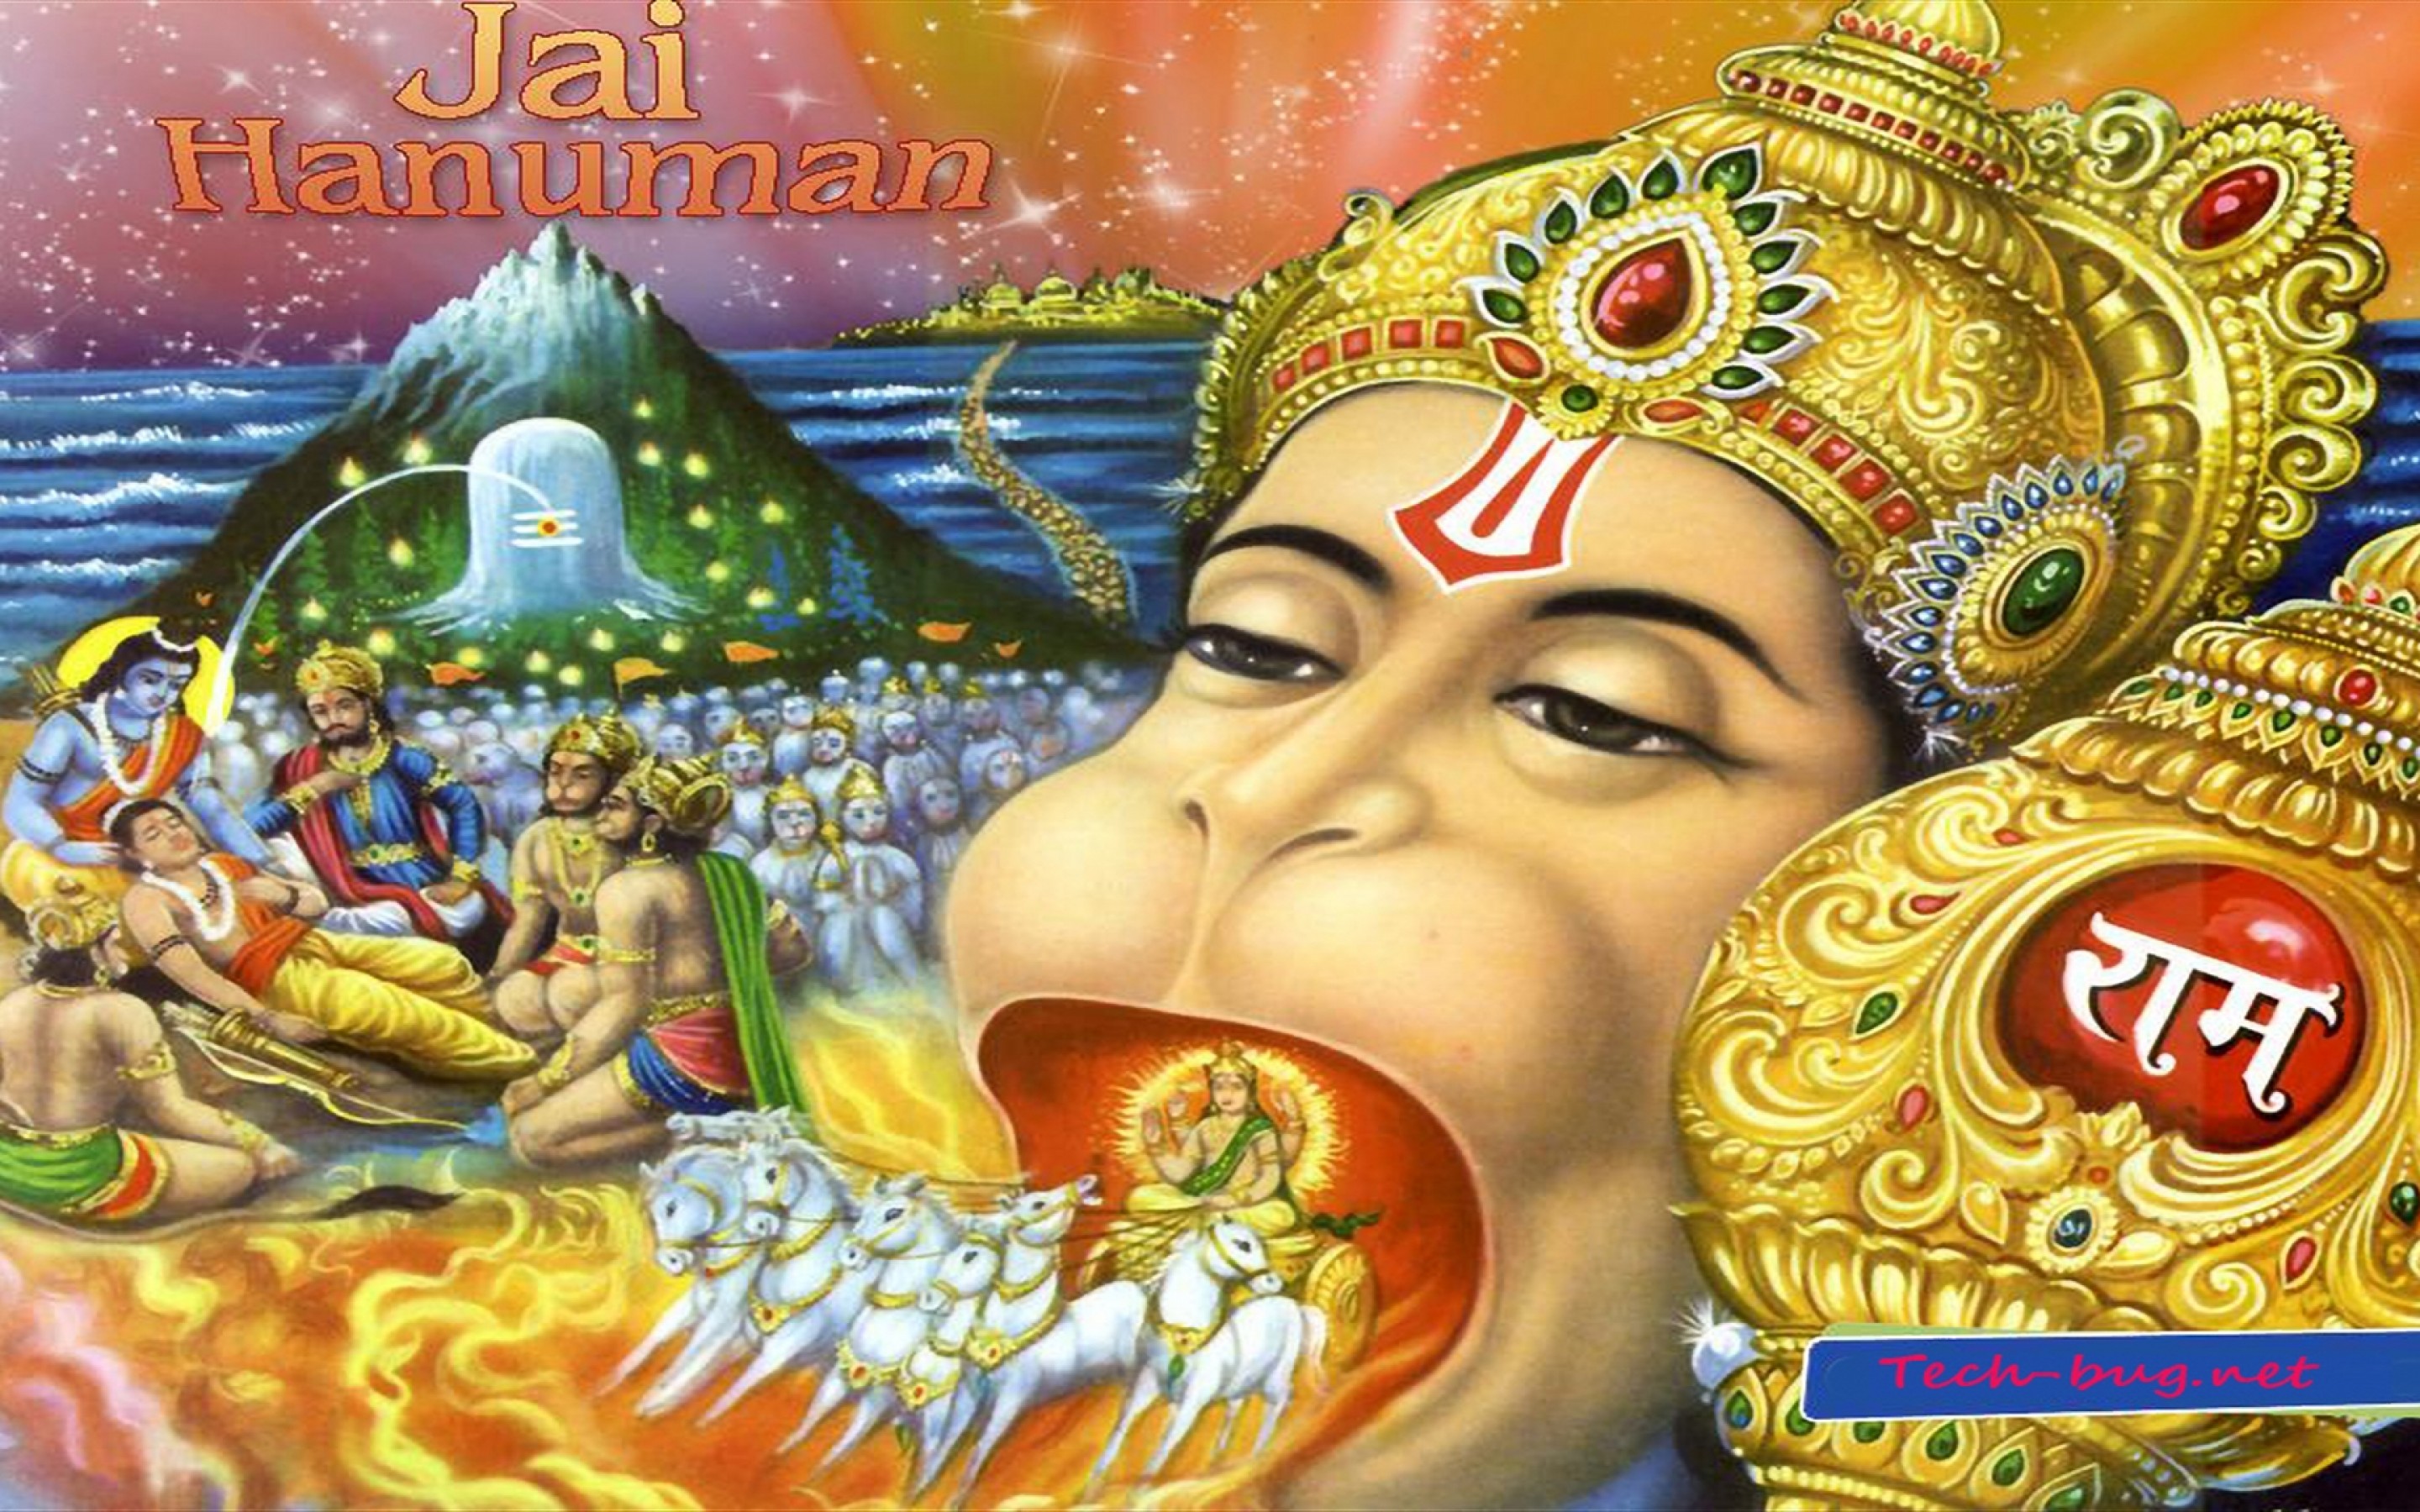 Download wallpaper for 240x320 resolution | Hanuman Ji wallpaper | other |  Wallpaper Better